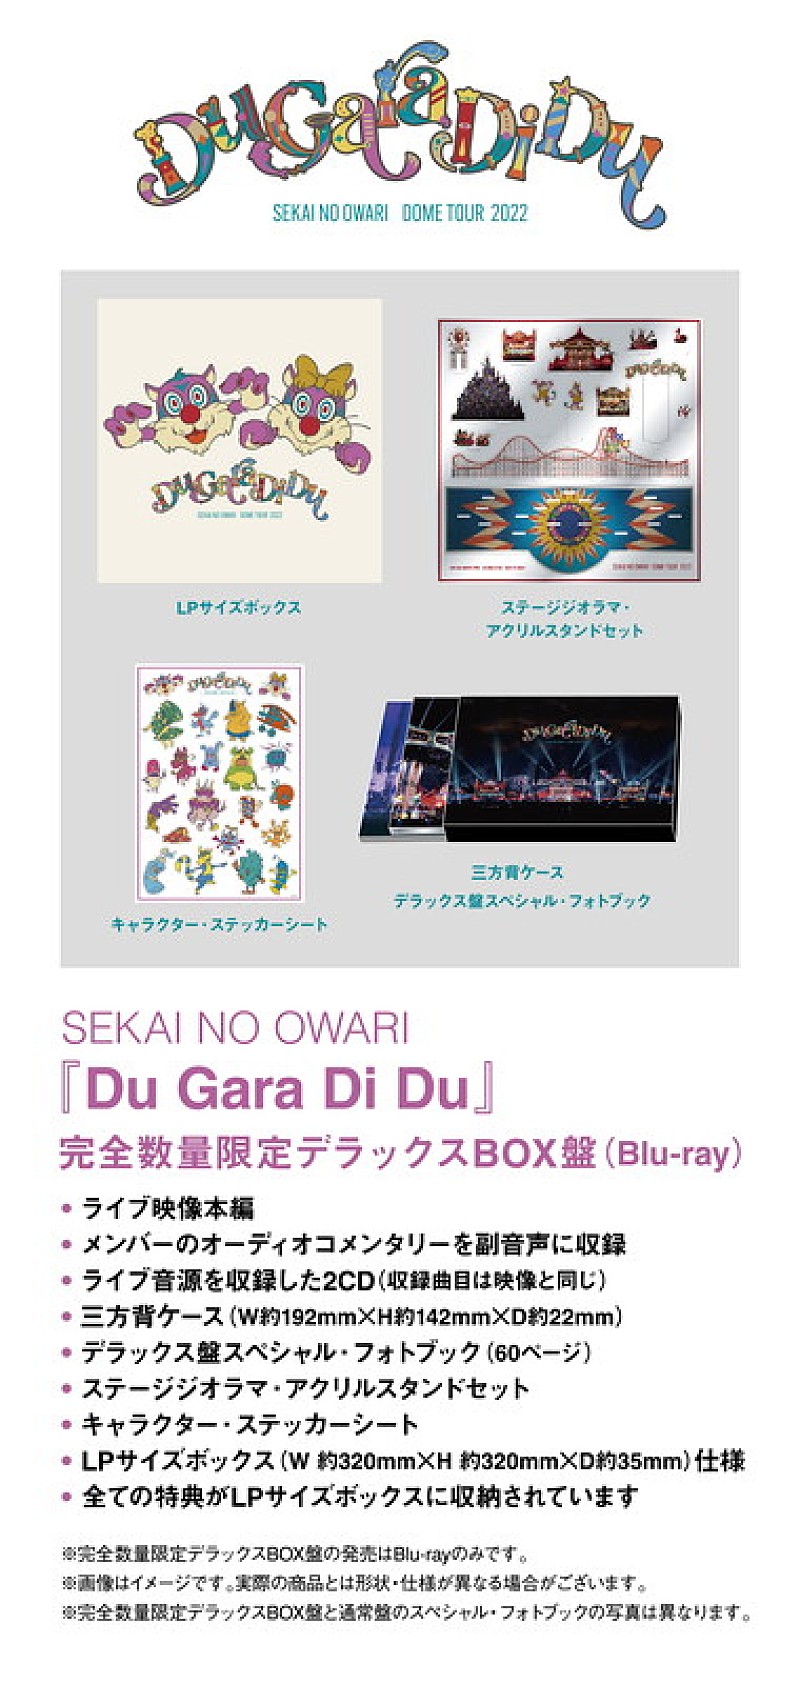 SEKAI NO OWARI「SEKAI NO OWARI LIVE DVD＆Blu-ray 『Du Gara Di Du』 完全数量限定デラックスBOX盤」4枚目/6